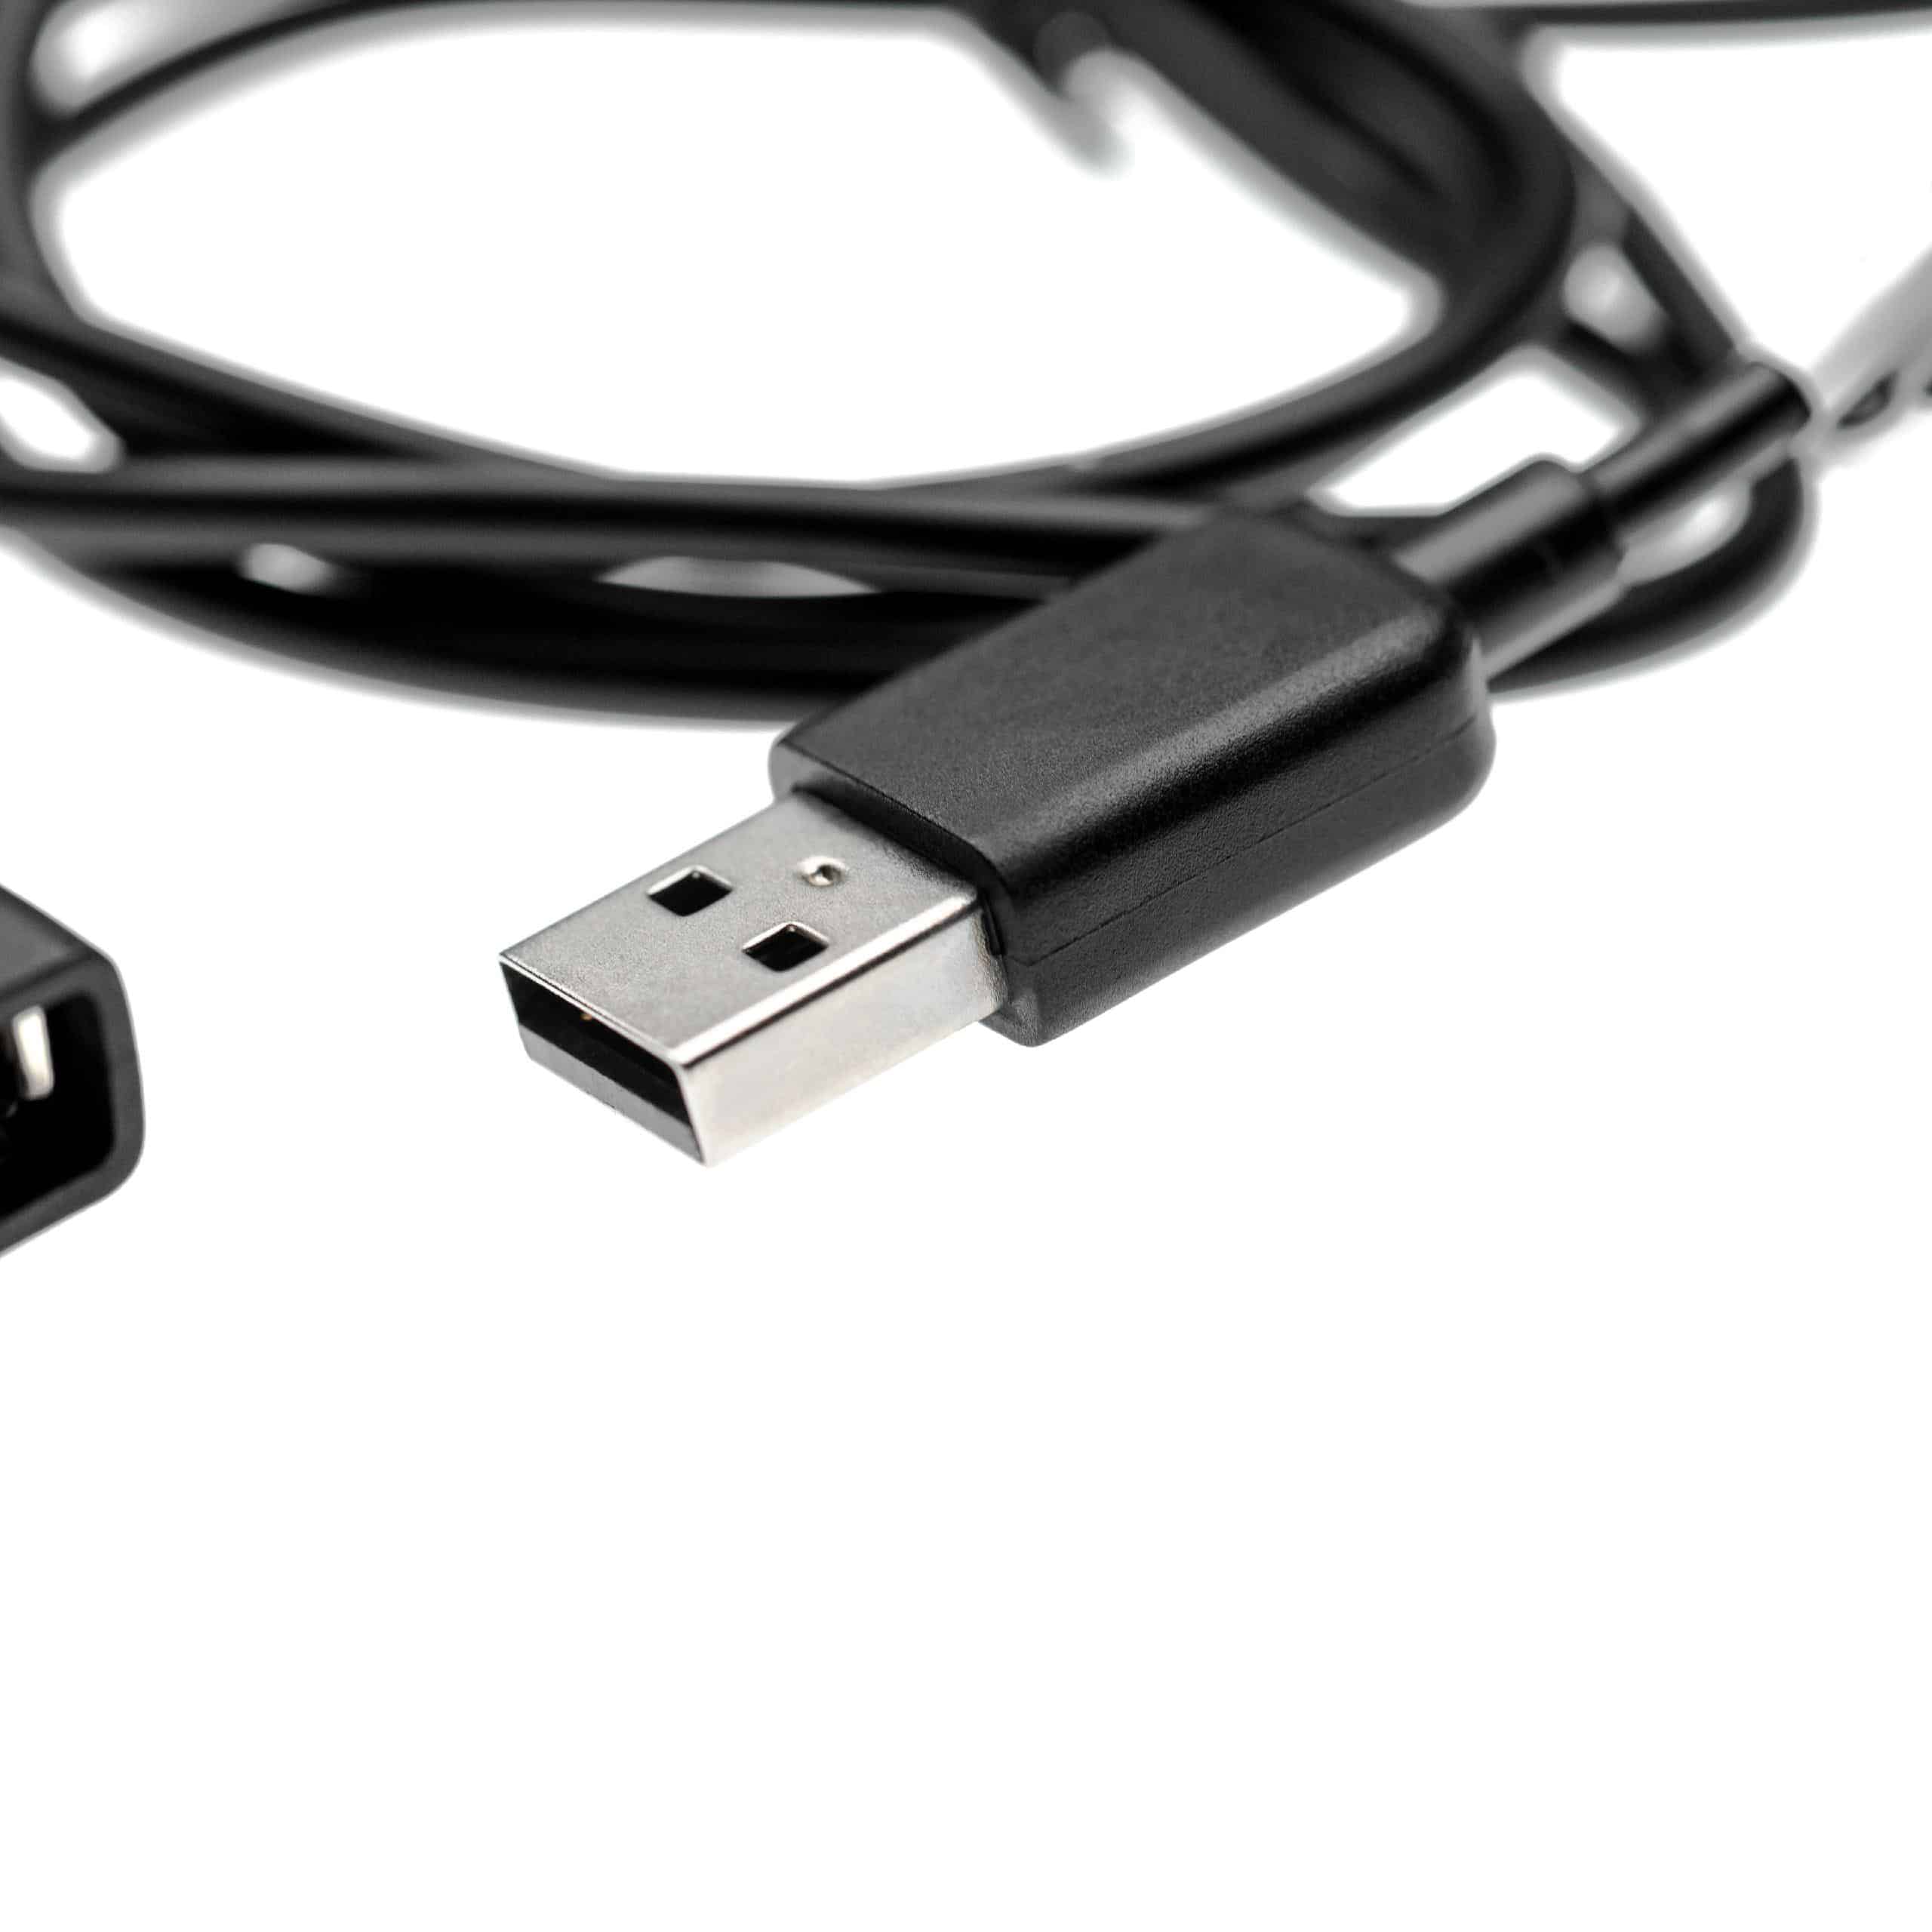 vhbw Cable alargador USB smartwatch, seguidor actividad, reloj deportivo - cable USB negro, 100 cm